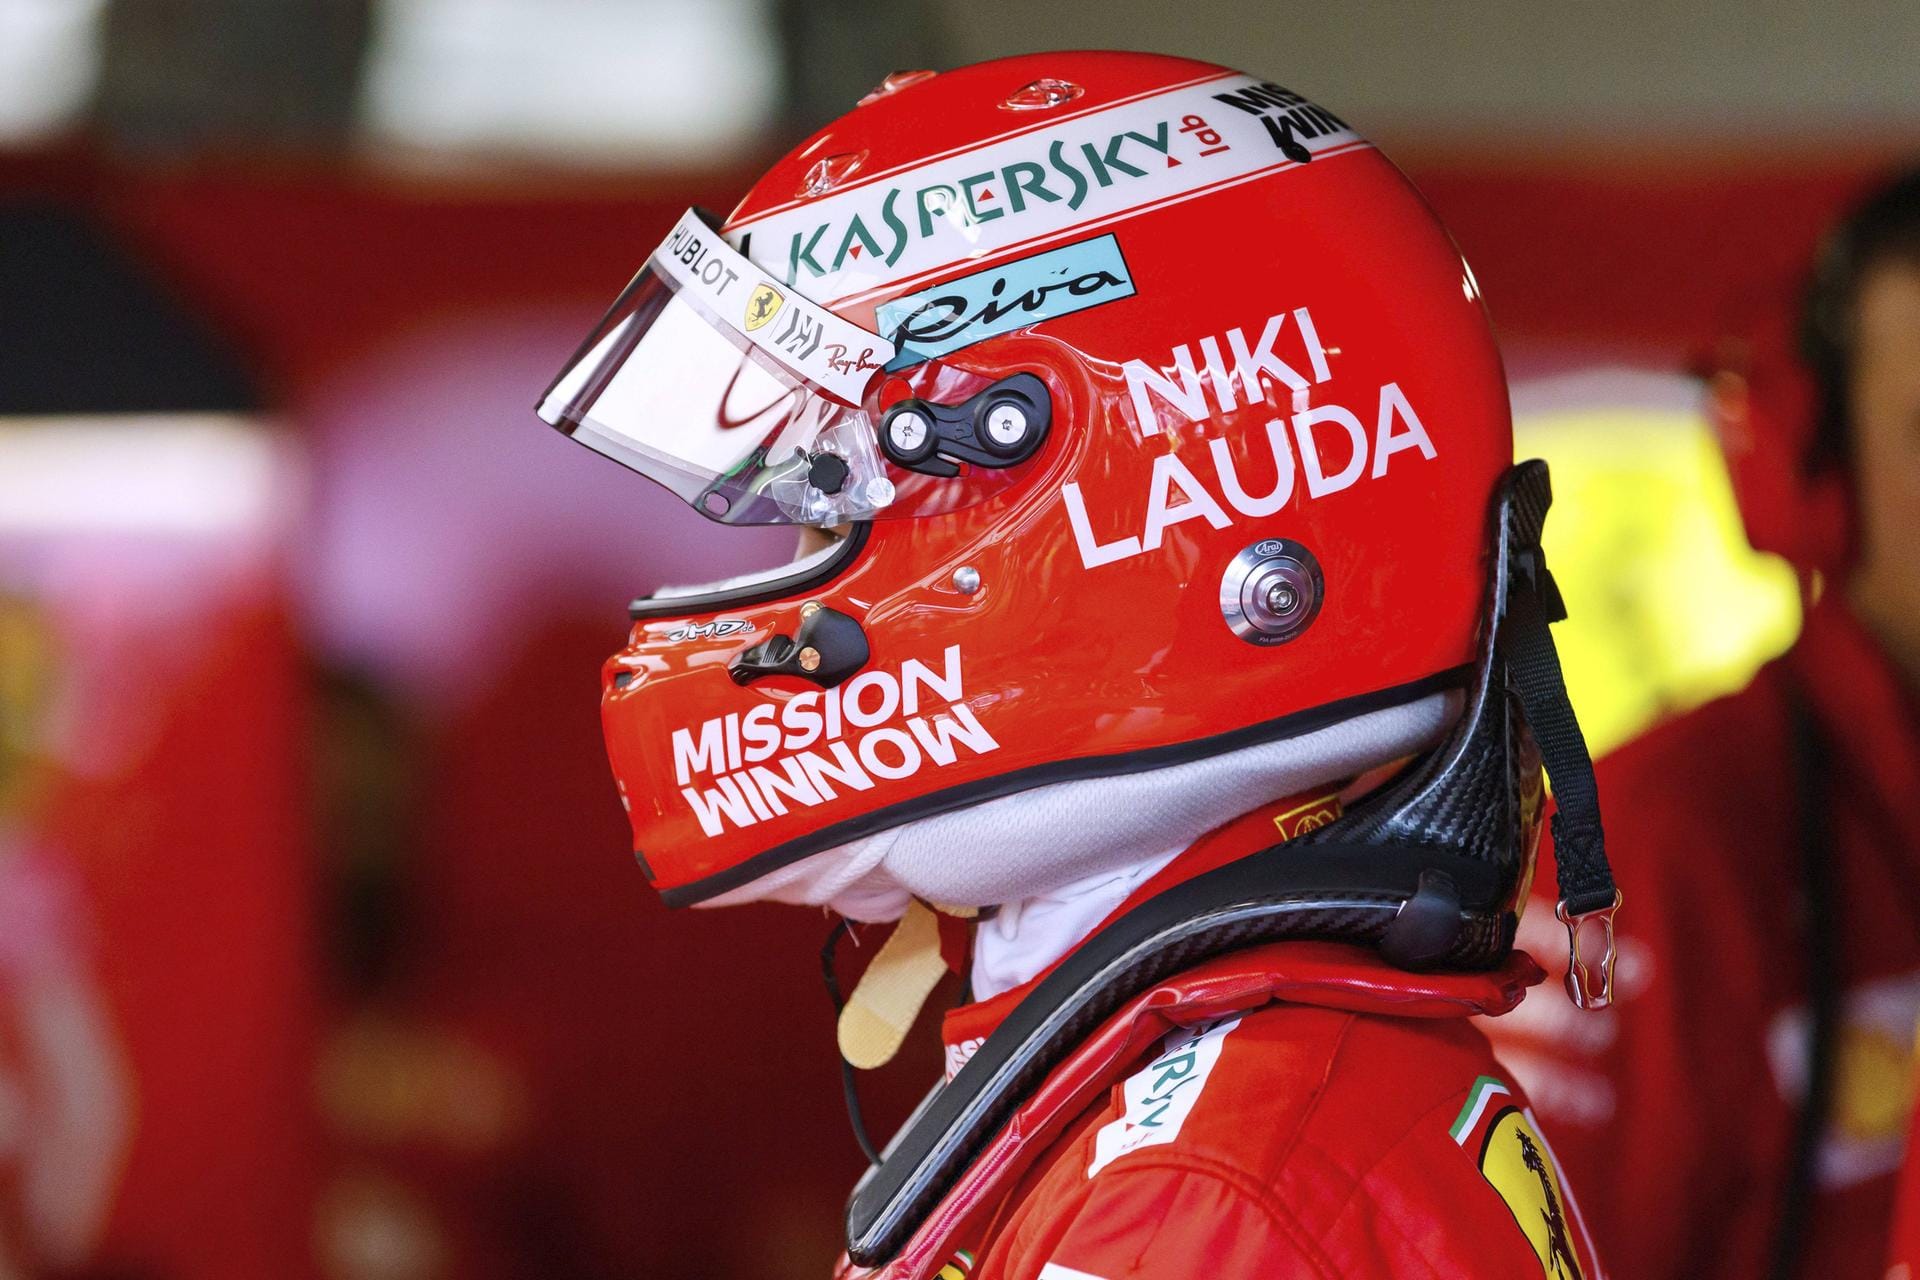 Blick" (Schweiz): Lewis Hamilton kürt sich in den engen Gassen zum König von Monaco. Und denkt nur an eines bzw. jemanden: Niki Lauda (+70). Überall Lauda in Monte Carlo! Die Ehrungen sind überwältigend, an jeder Ecke sind Widmungen, Trauerbekundungen und Danksagungen zu sehen. Und Lauda feiert gar einen Doppelsieg. Denn: Sowohl Sieger Hamilton als auch der zweitplatzierte Sebastian Vettel im Ferrari tragen einen Lauda-Helm.